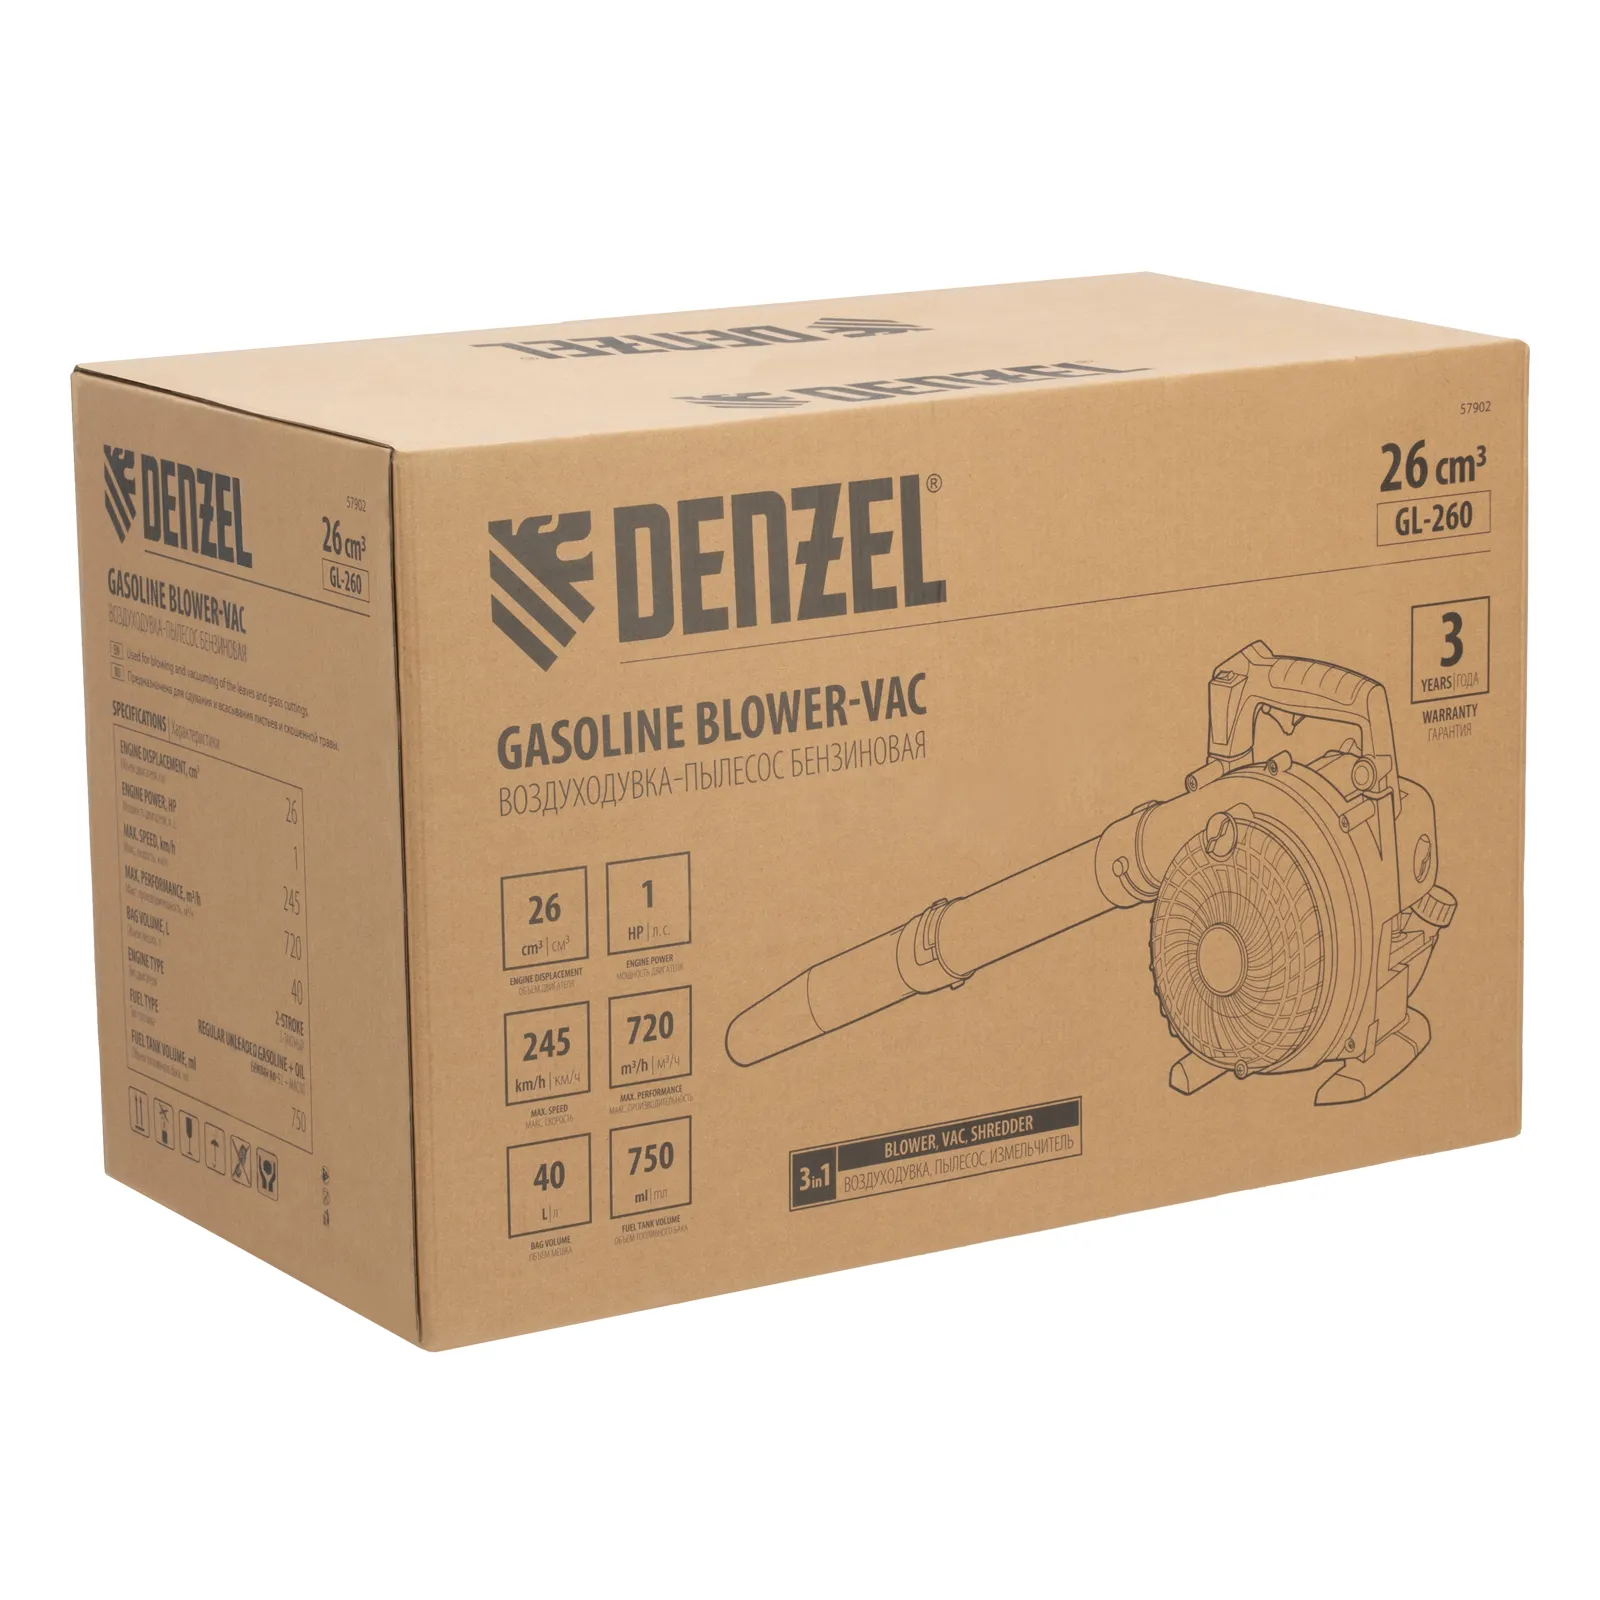 Воздуходувка-пылесос бензиновая GL-260, 26 см3, 1 л.с.// Denzel 57902